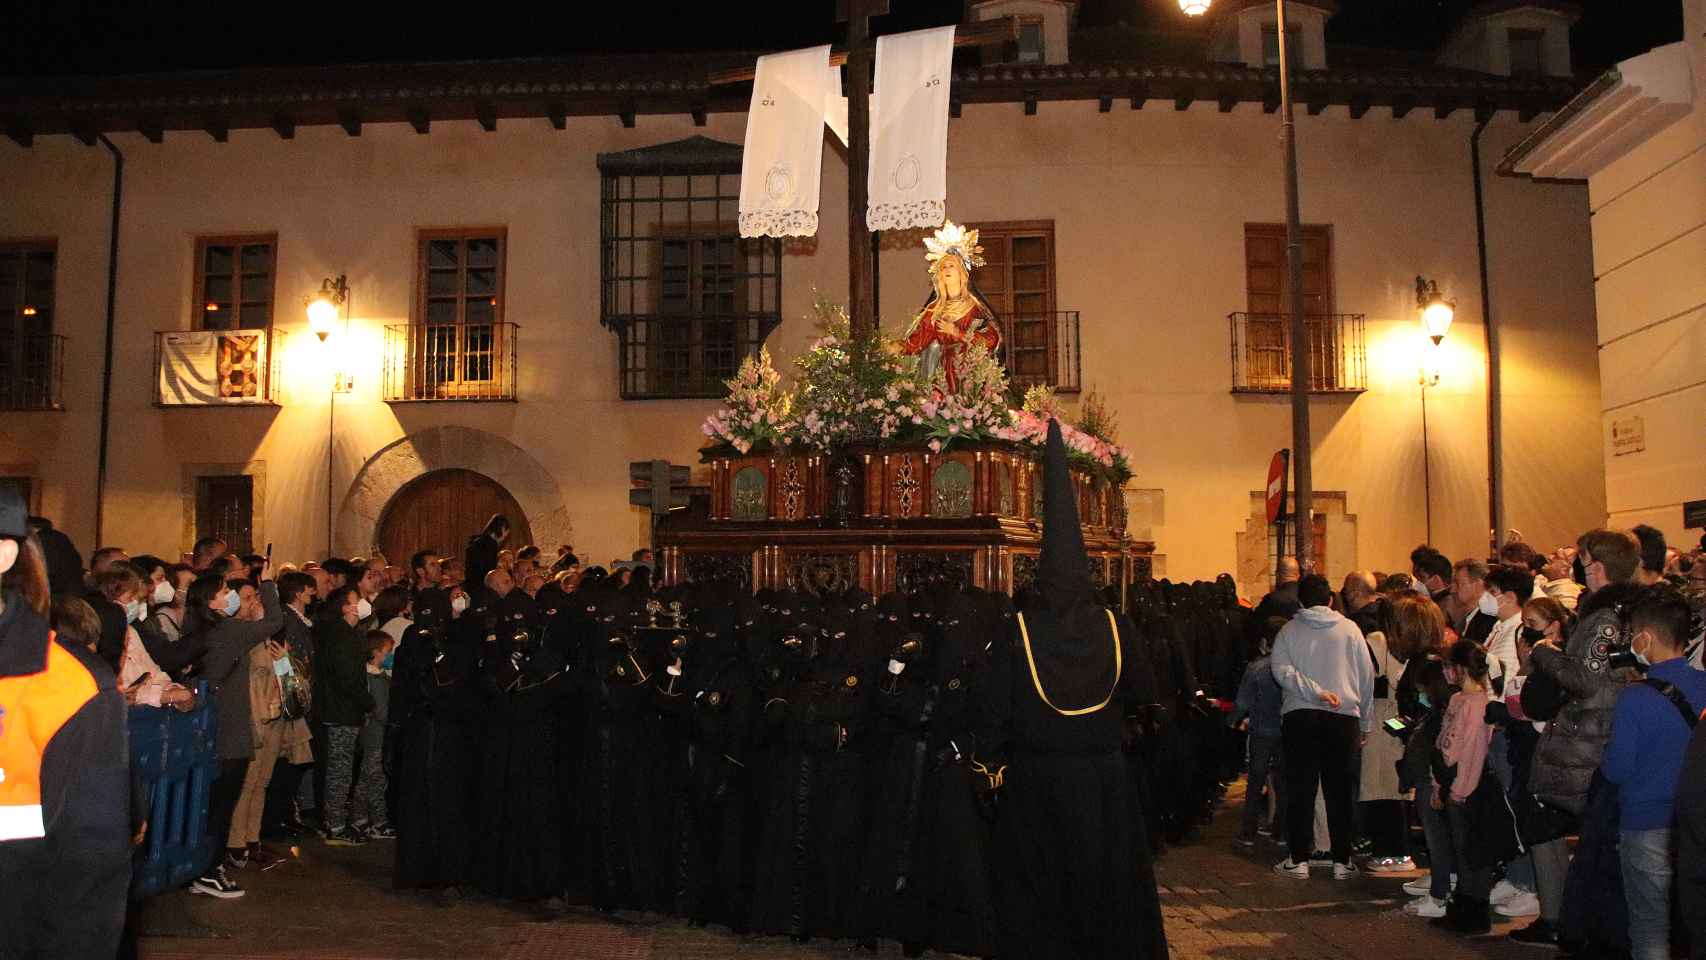 La procesión del Santo Entierro cierra las celebraciones del Viernes Santo en León